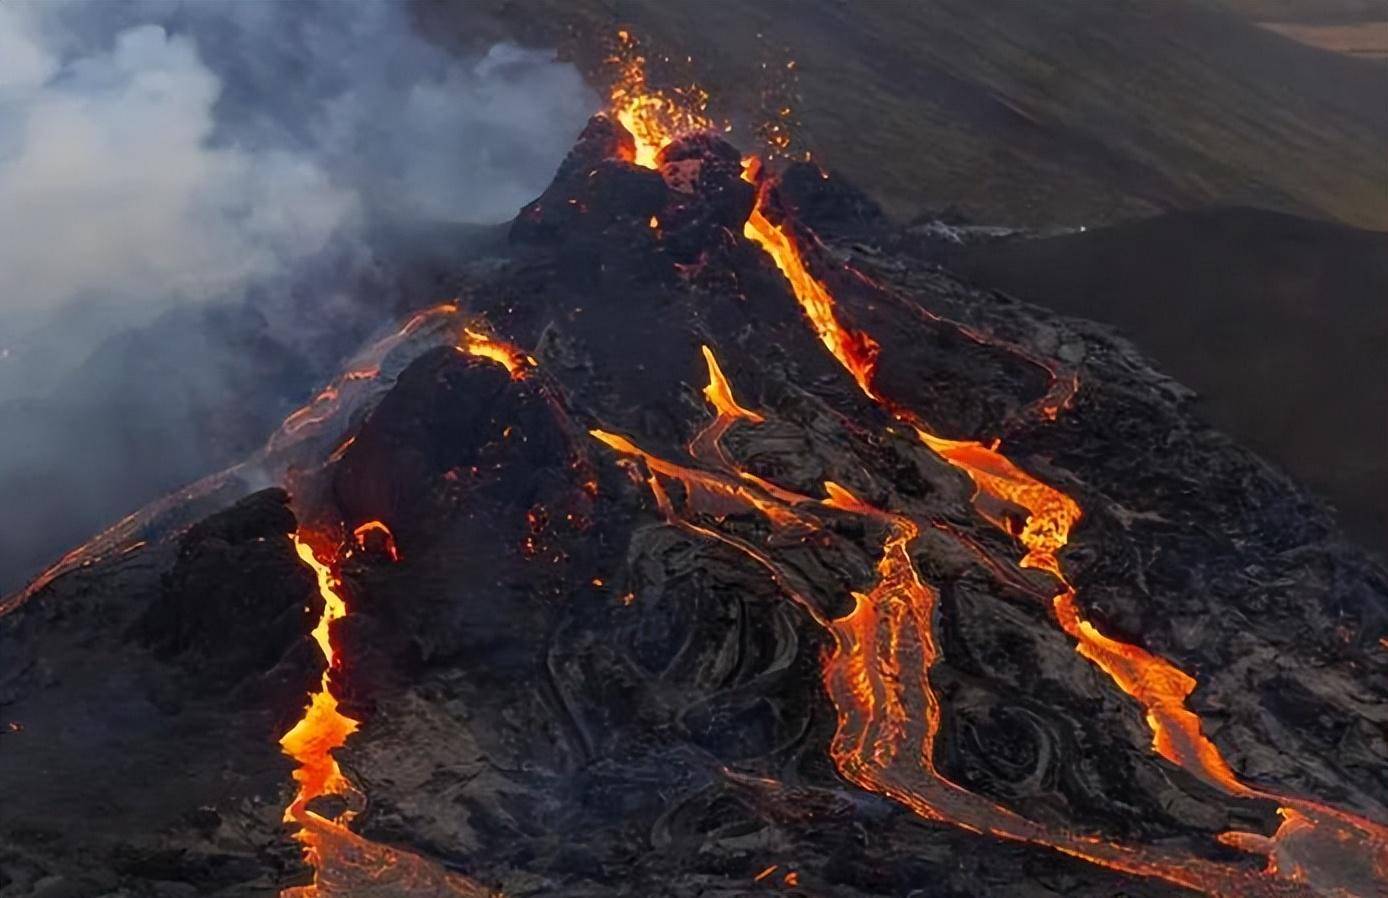 火山爆发所造成的灾害有很多,比如熔岩流,火山泥石流等等